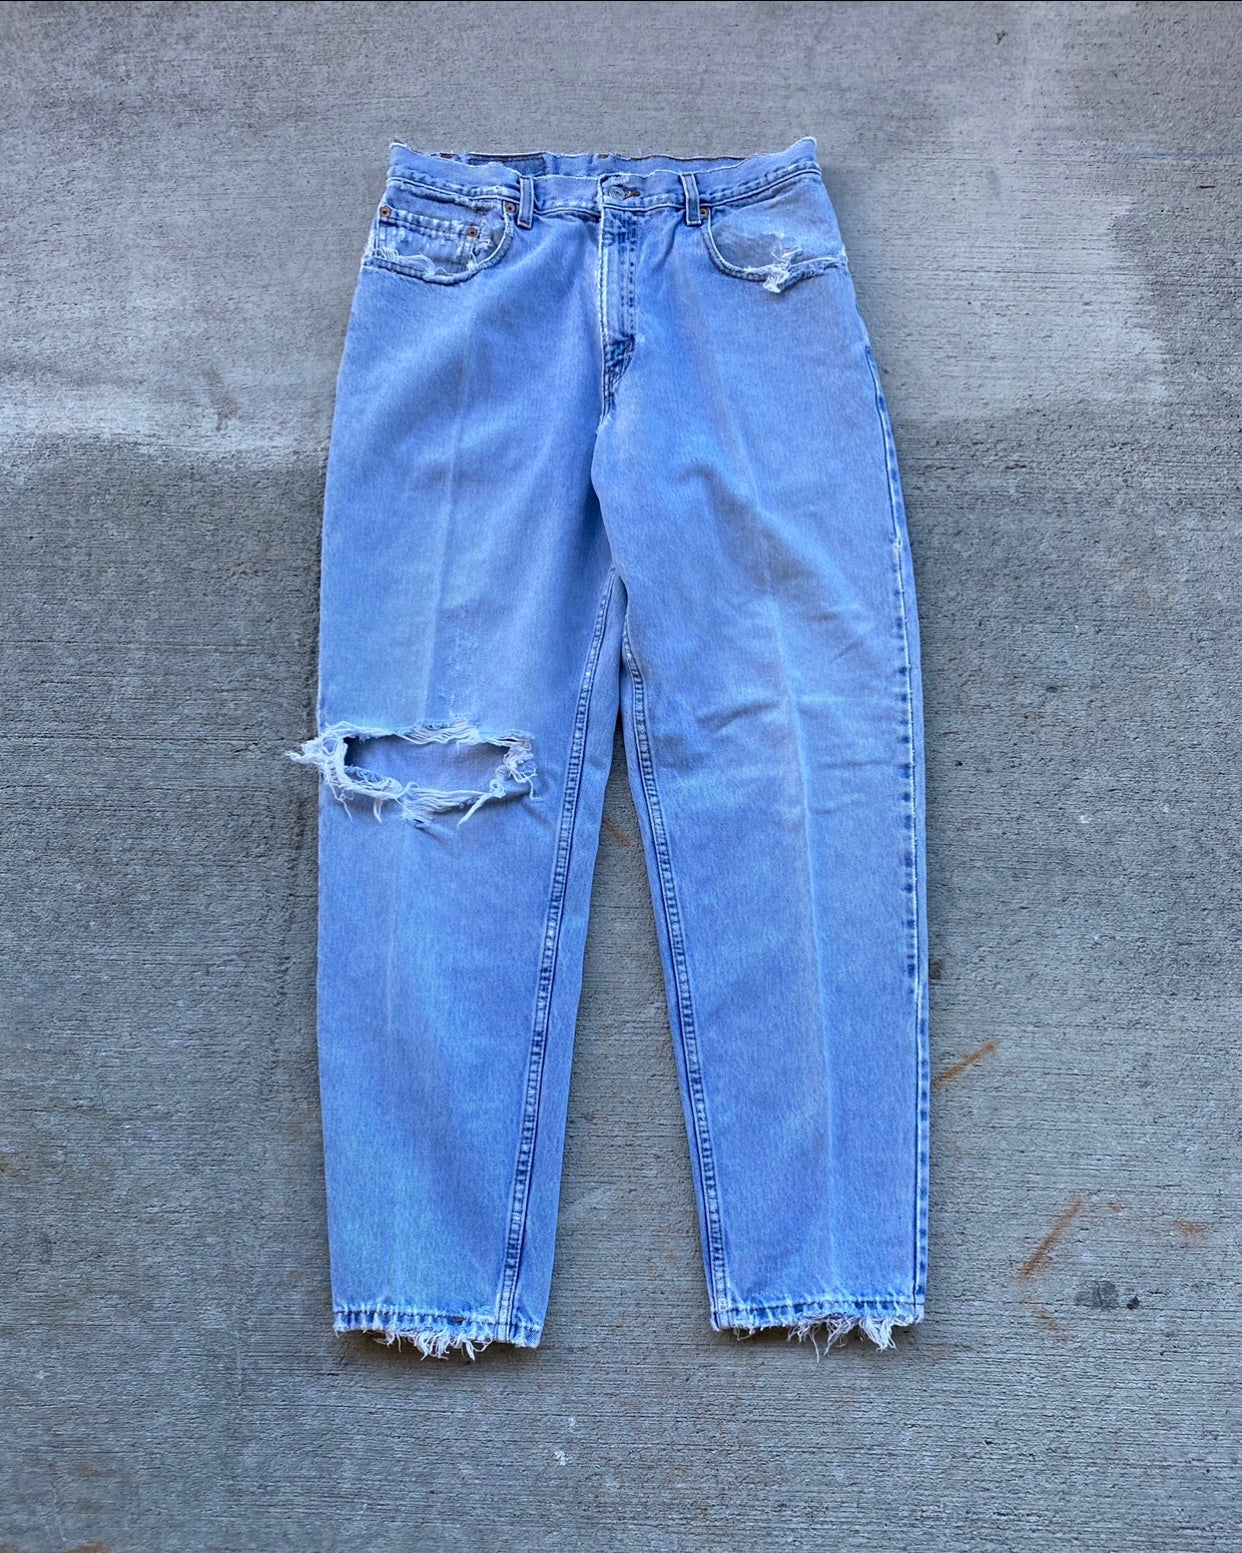 1990s Levi's 560 Blowout Light Wash Jeans - Size 33 x 31.5